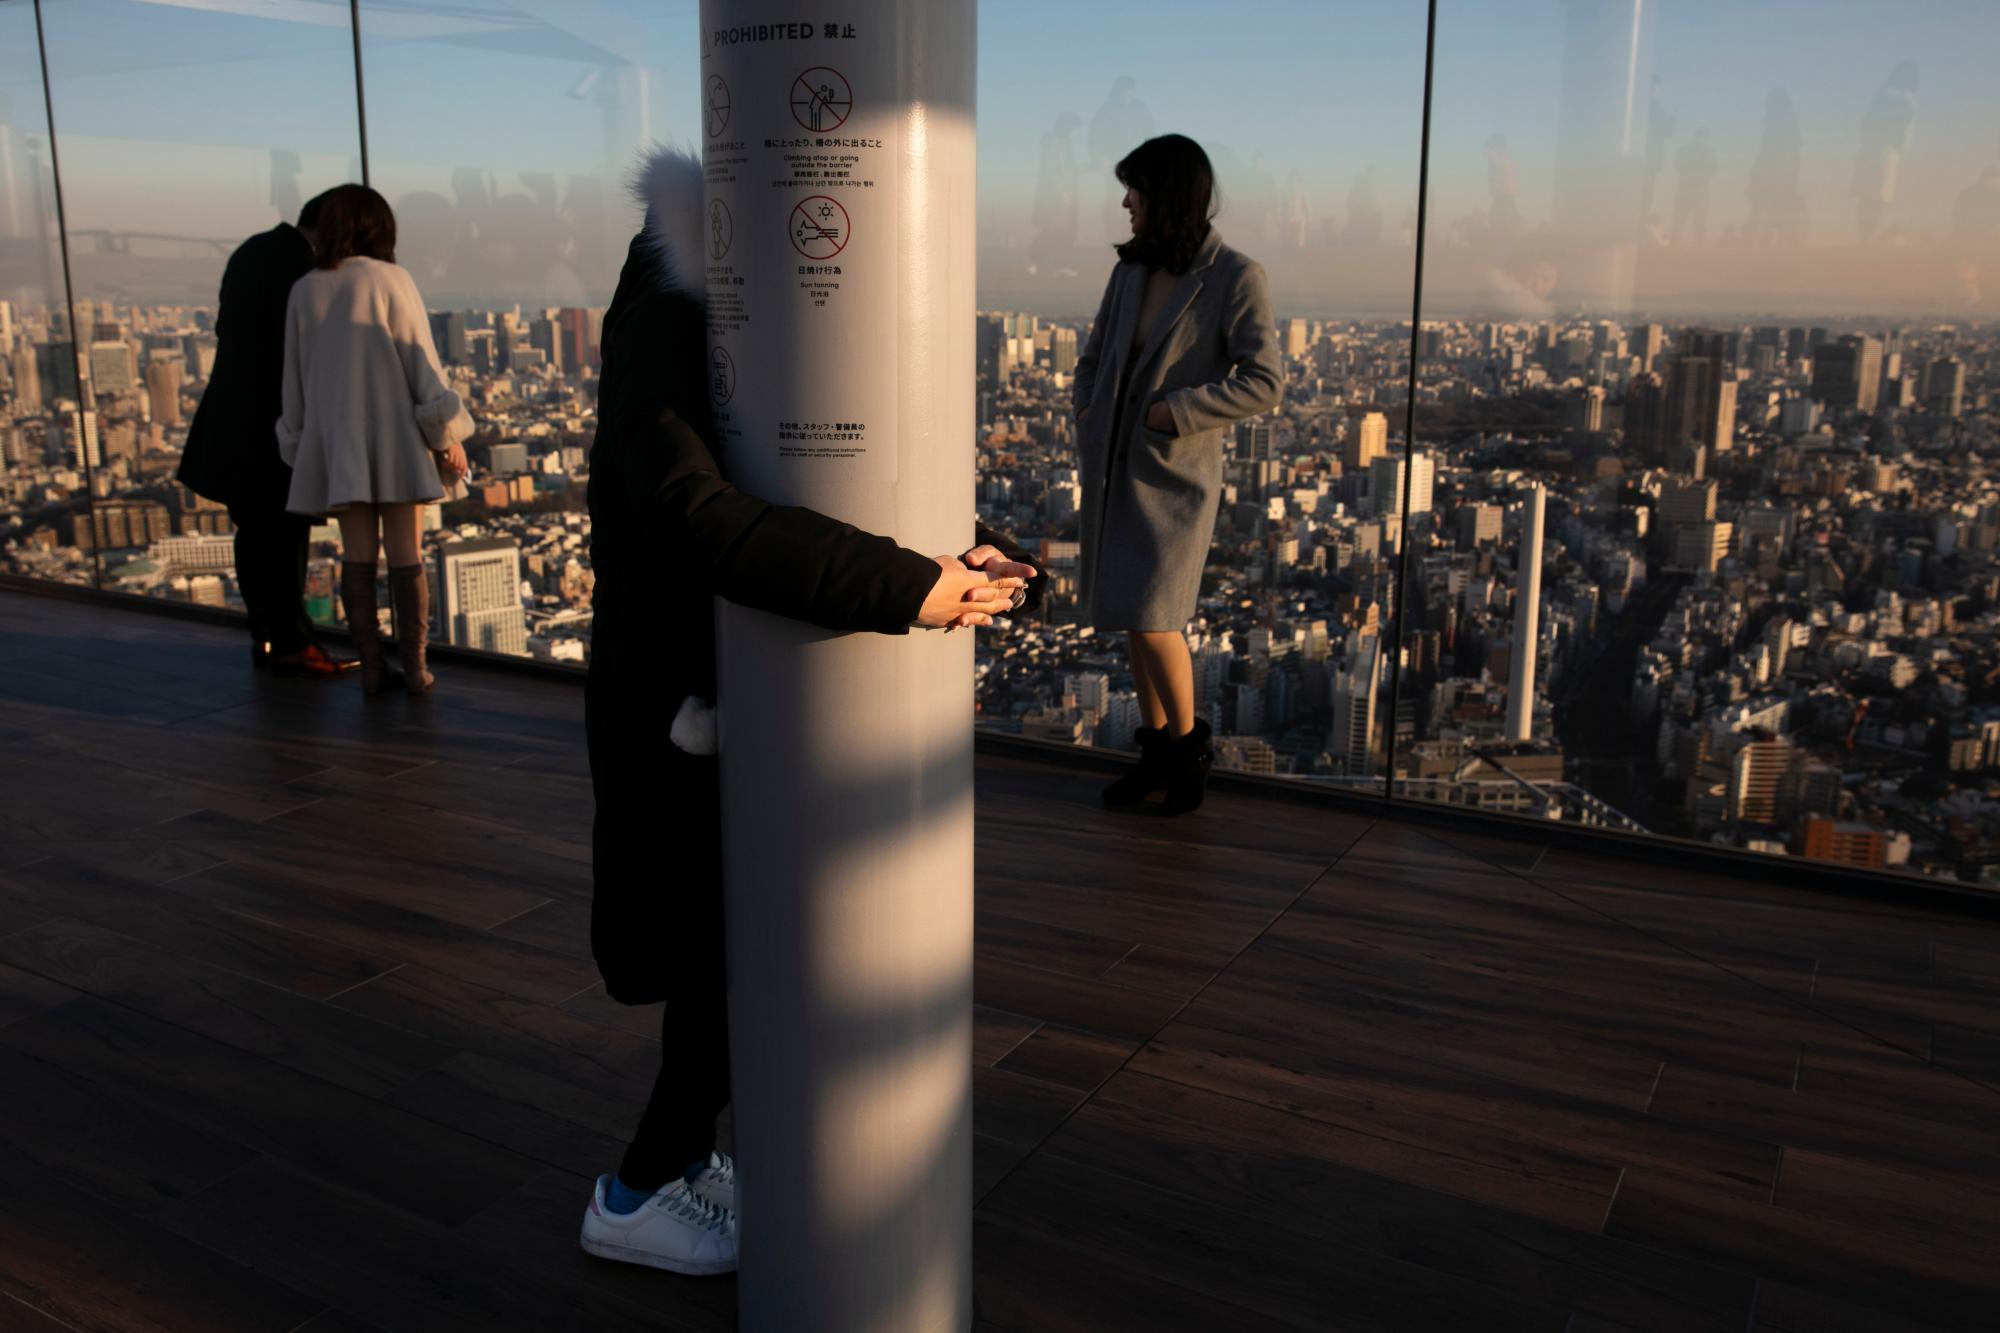 Una turista, que dijo que tiene miedo a la altura, se aferra a un pilar mientras sus amigos toman fotos en la plataforma de observación Shibuya Sky el lunes 20 de enero de 2020, en el distrito de Shibuya de Tokio. Ubicado en la azotea de Shibuya Scramble Square, un rascacielos de 47 pisos, el observatorio es la plataforma de observación al aire libre más nueva de Tokio, con vistas al famoso cruce de Shibuya 